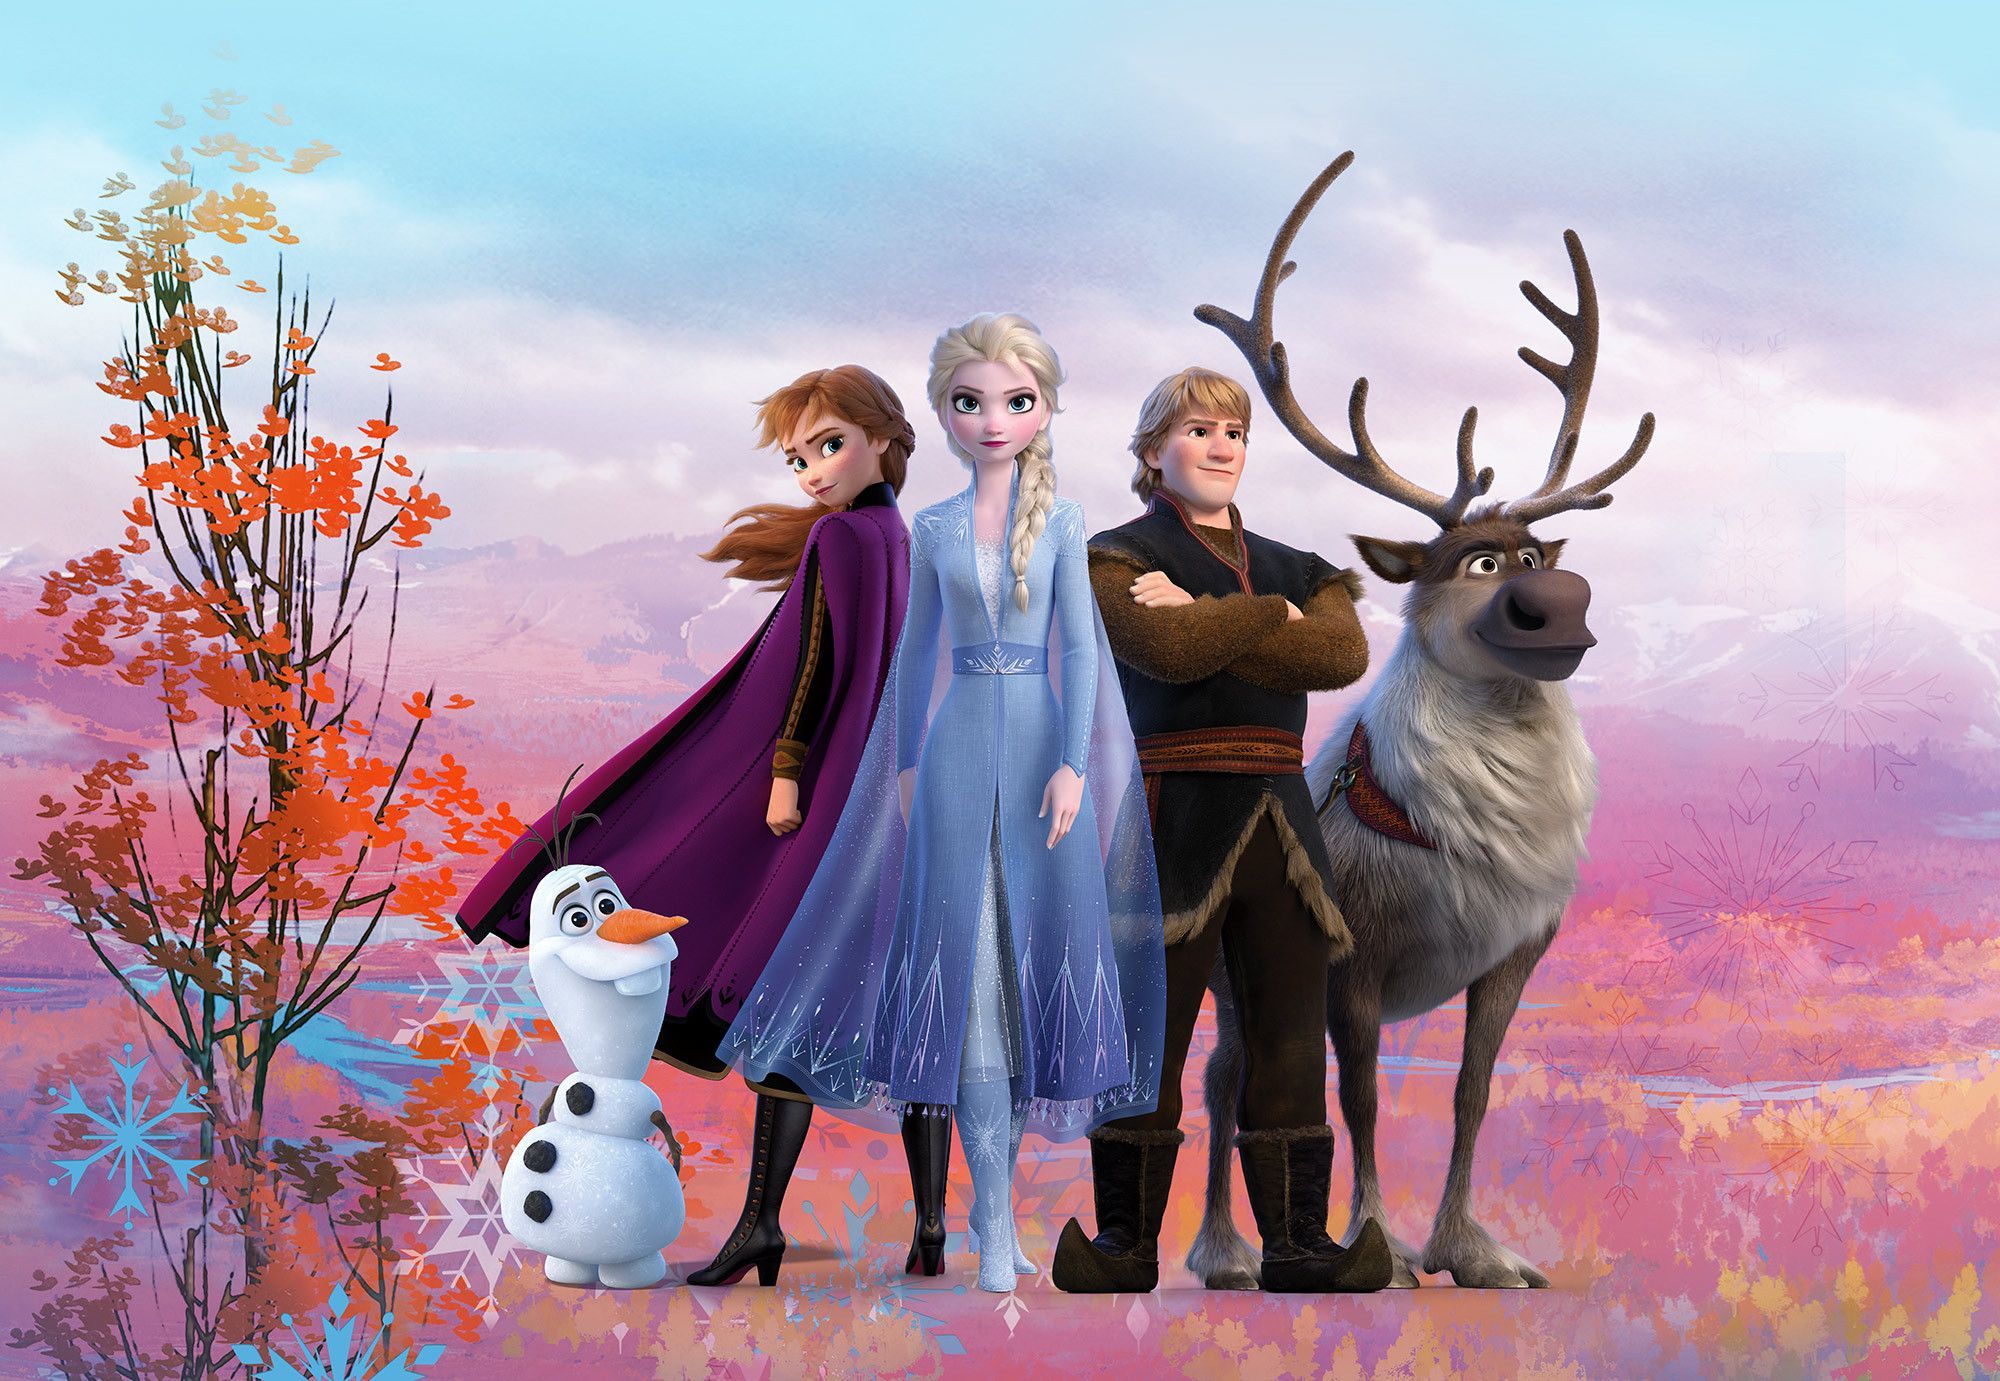 Children's bedroom wallpaper mural Frozen 2 Elsa Anna Disney big